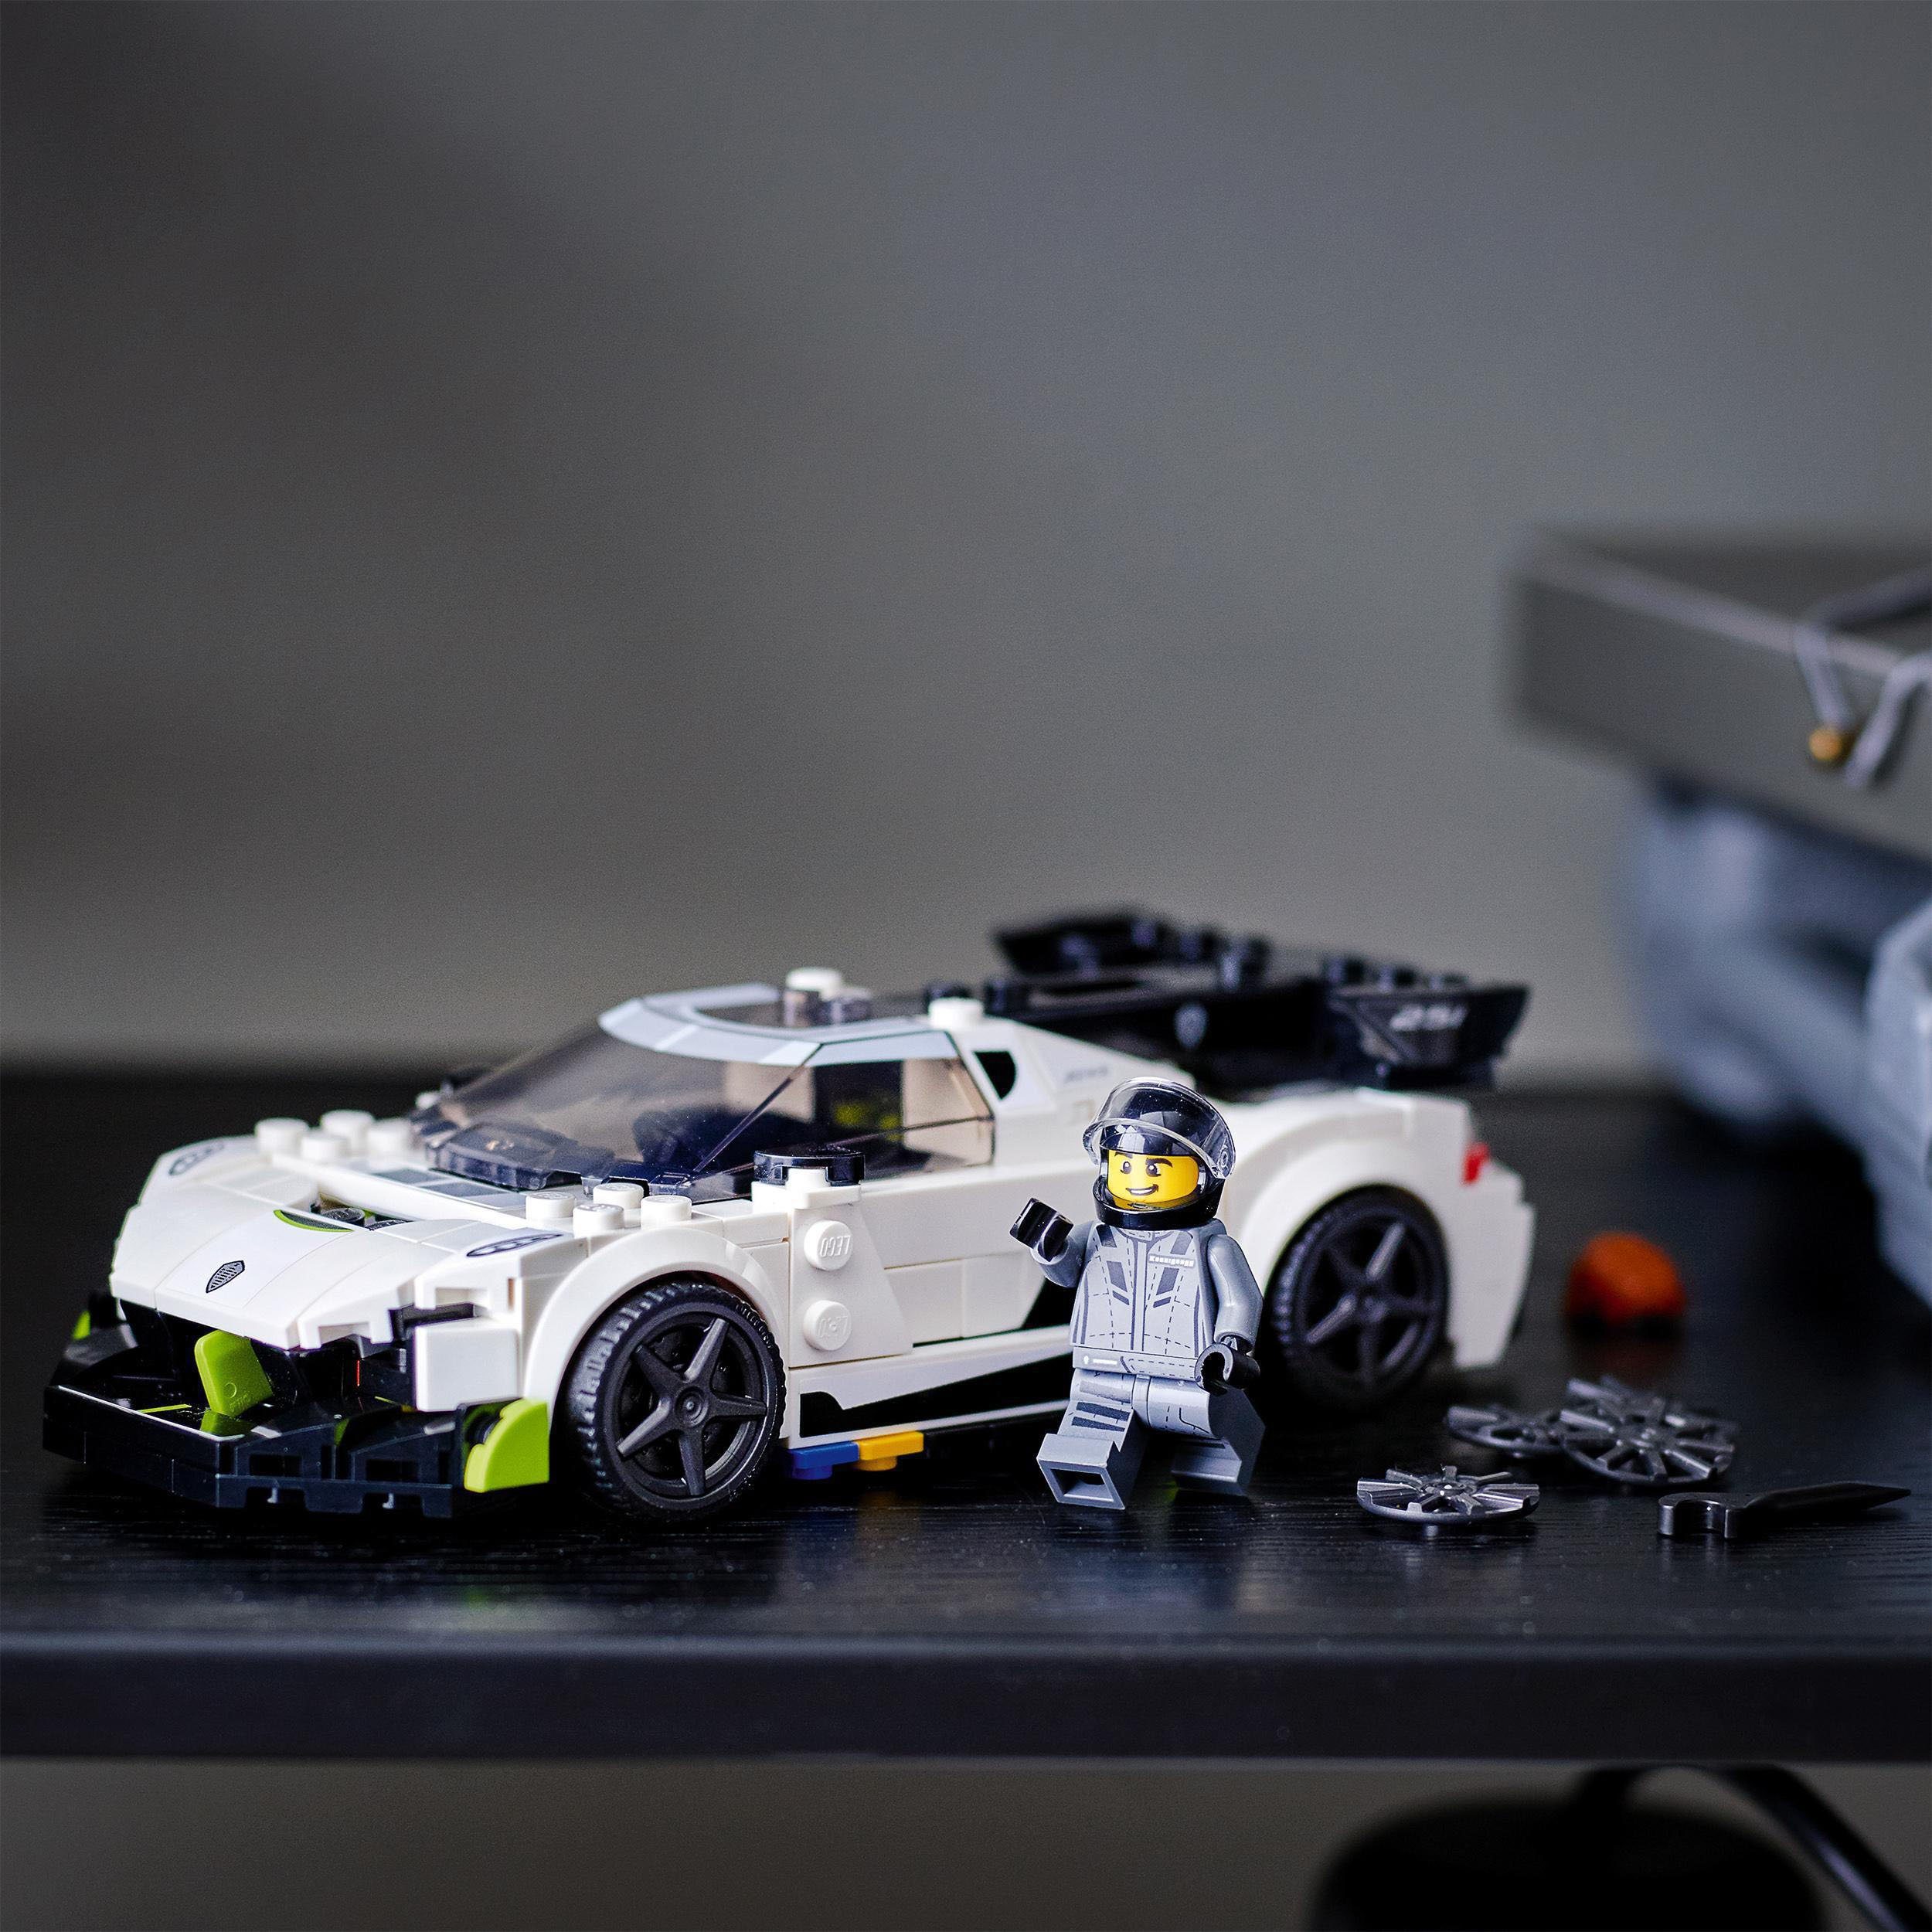 Jesko St) LEGO® Konstruktionsspielsteine Koenigsegg Champions, Speed LEGO® (76900), (280